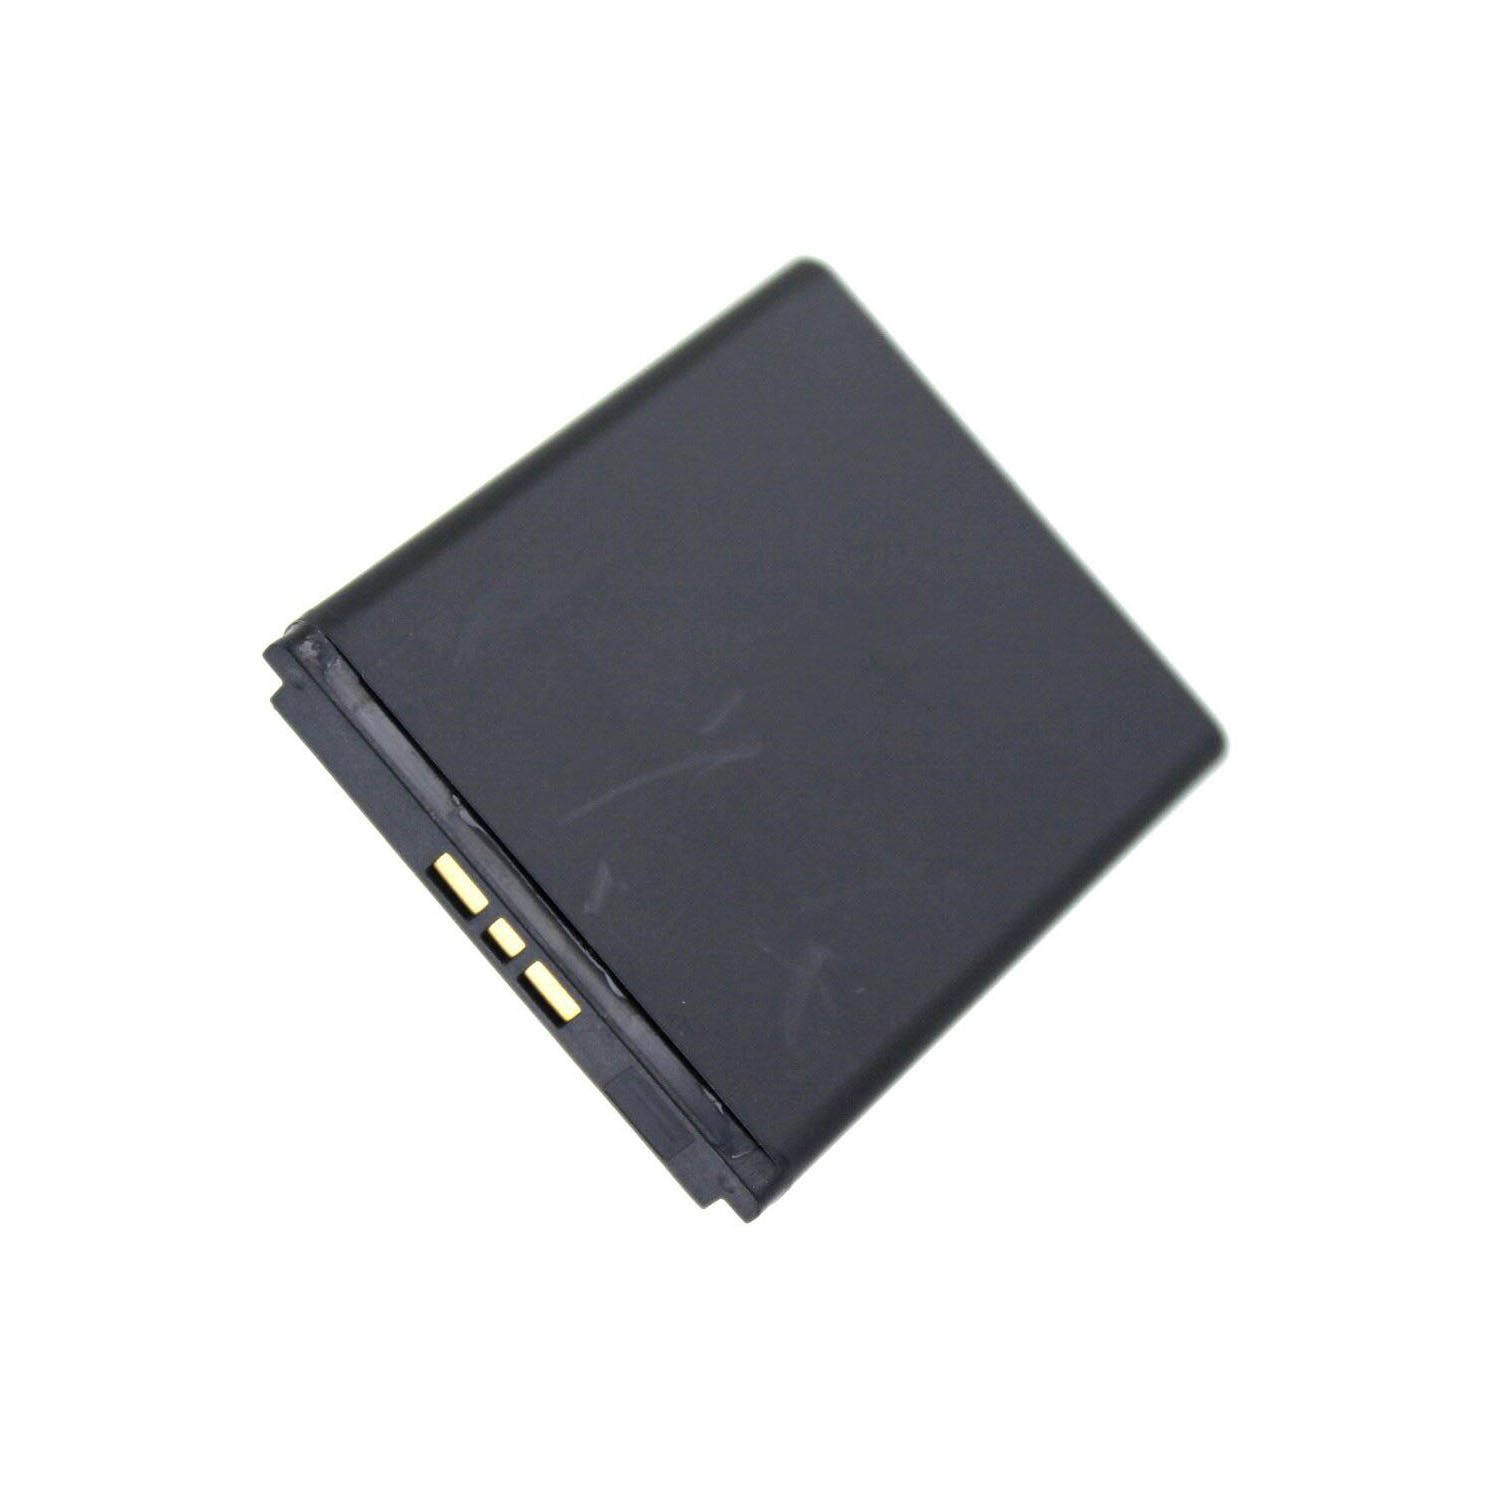 Akku kompatibel mit Sony Ericsson Aino 3,00 Volt 860 mAh 2,58 Wh Li-Ion Akku